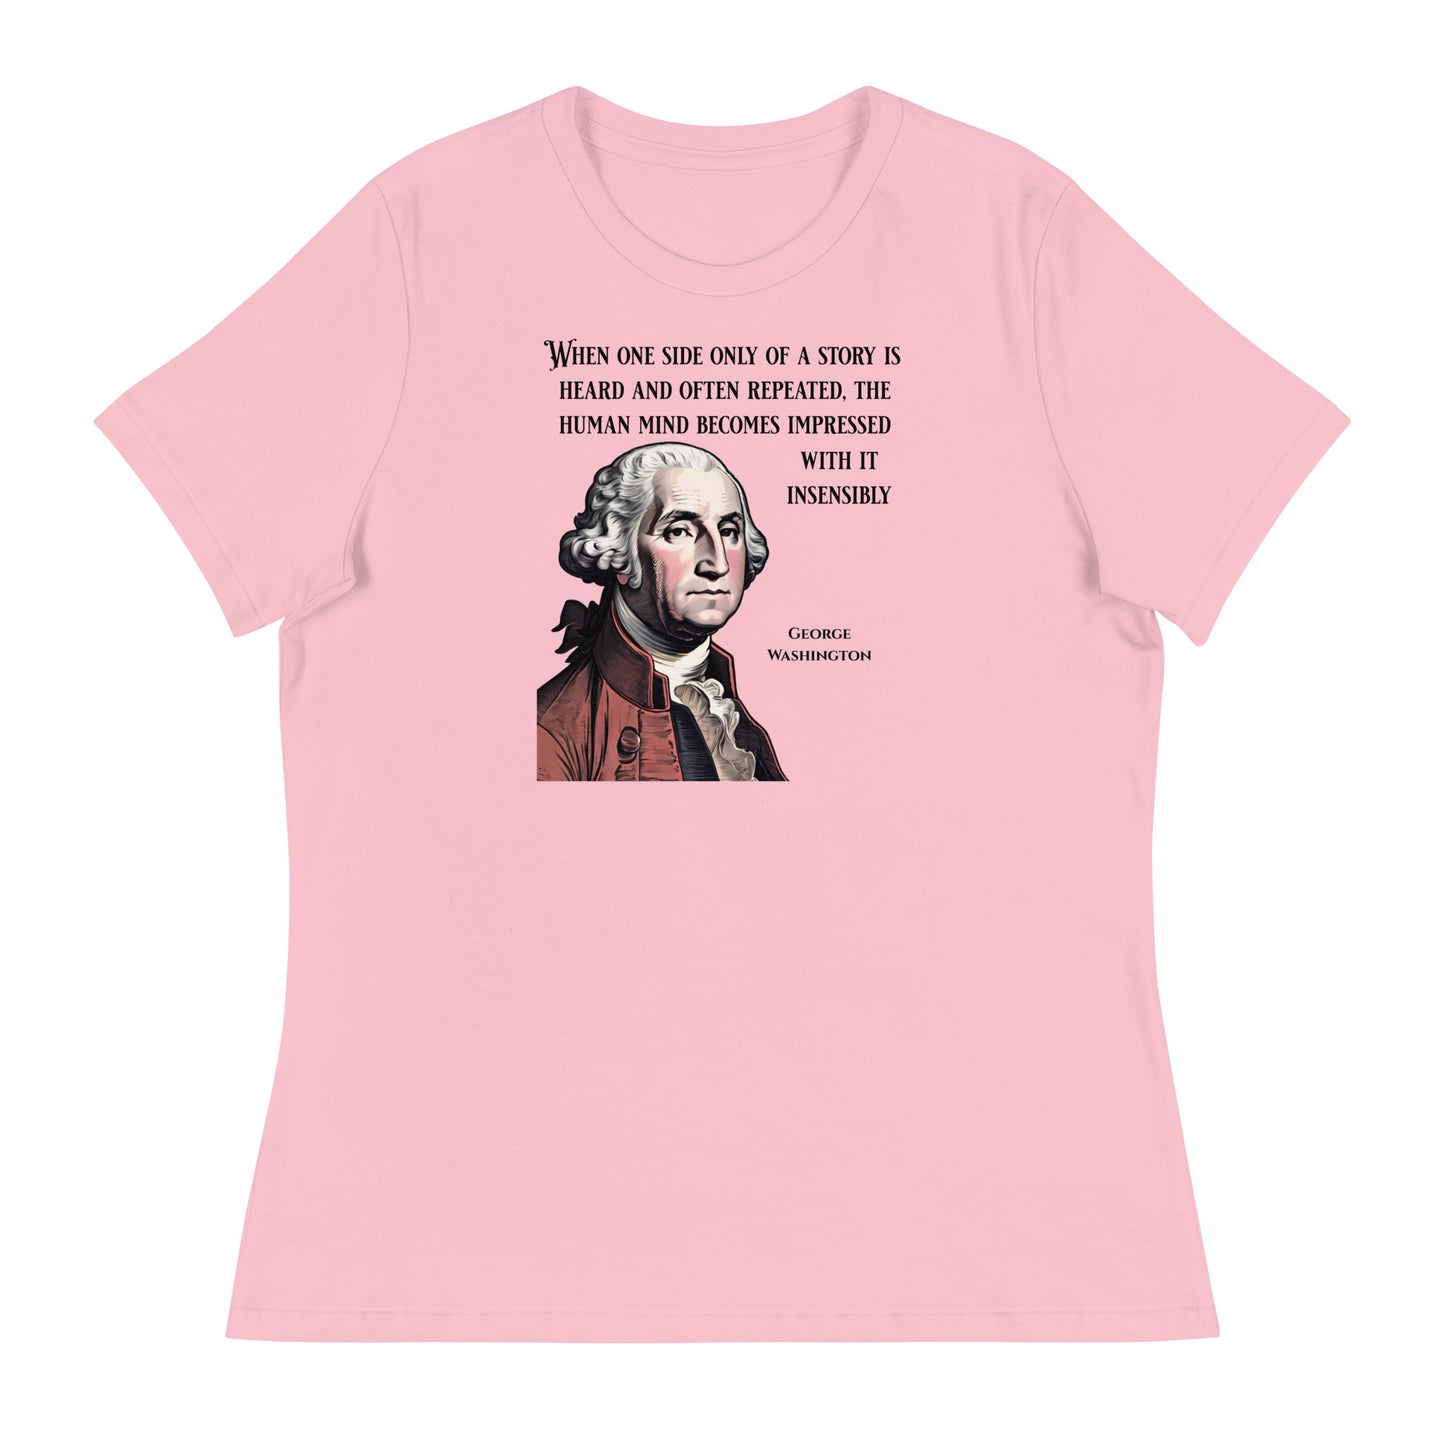 Washington's Wisdom Women's T-Shirt Pink